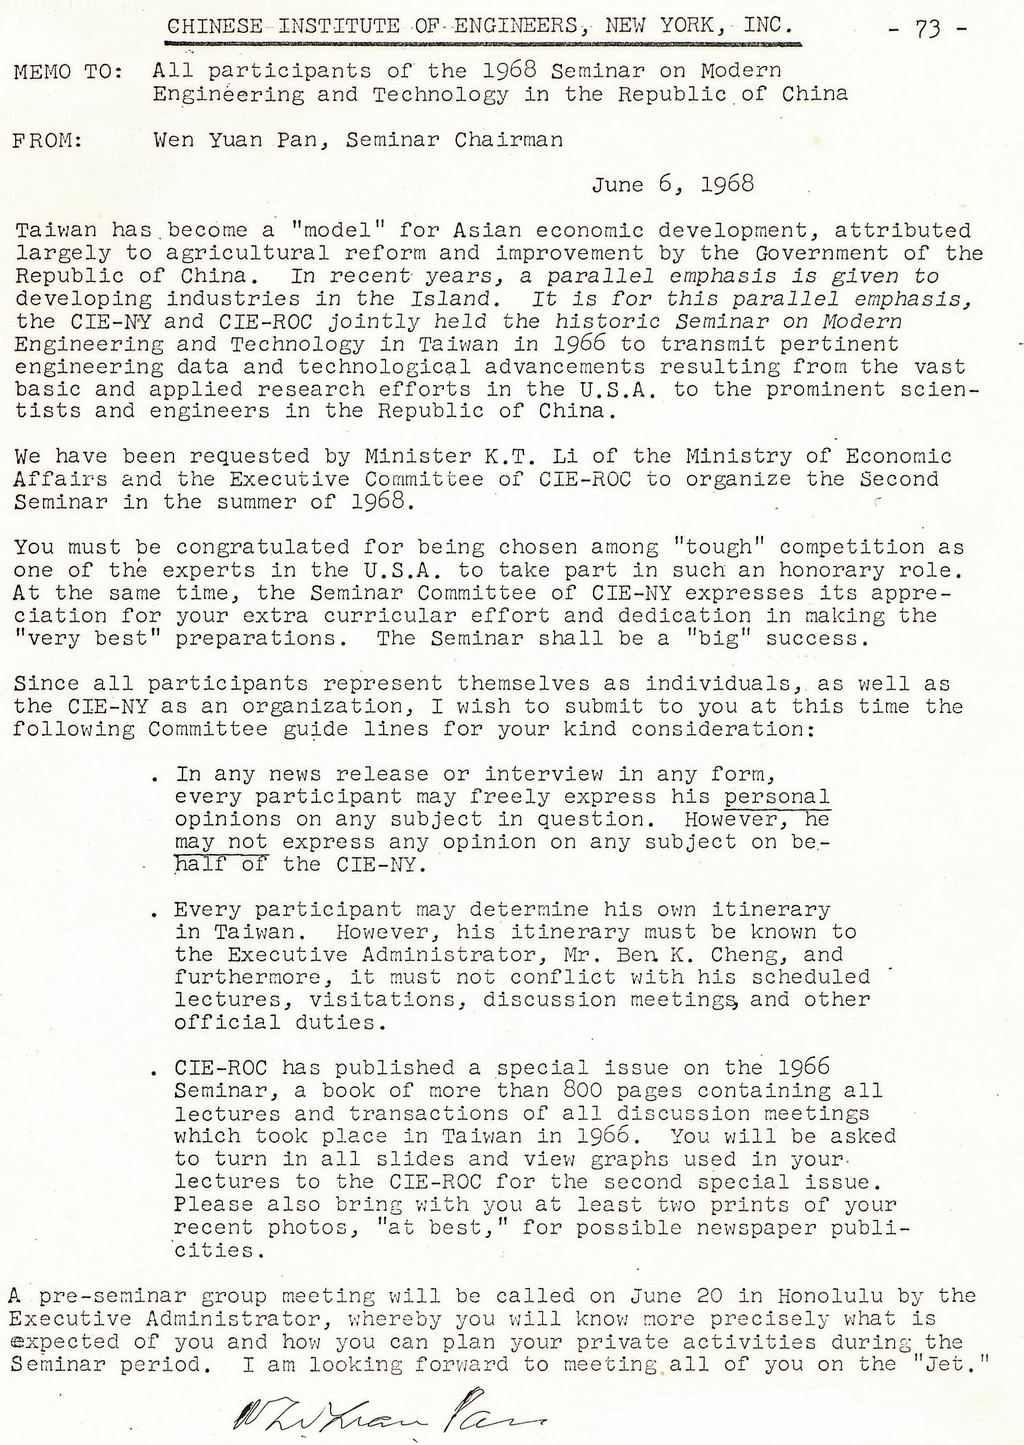 潘文淵寫給所有參加1968年近代工程技術討論會與會者的通知信